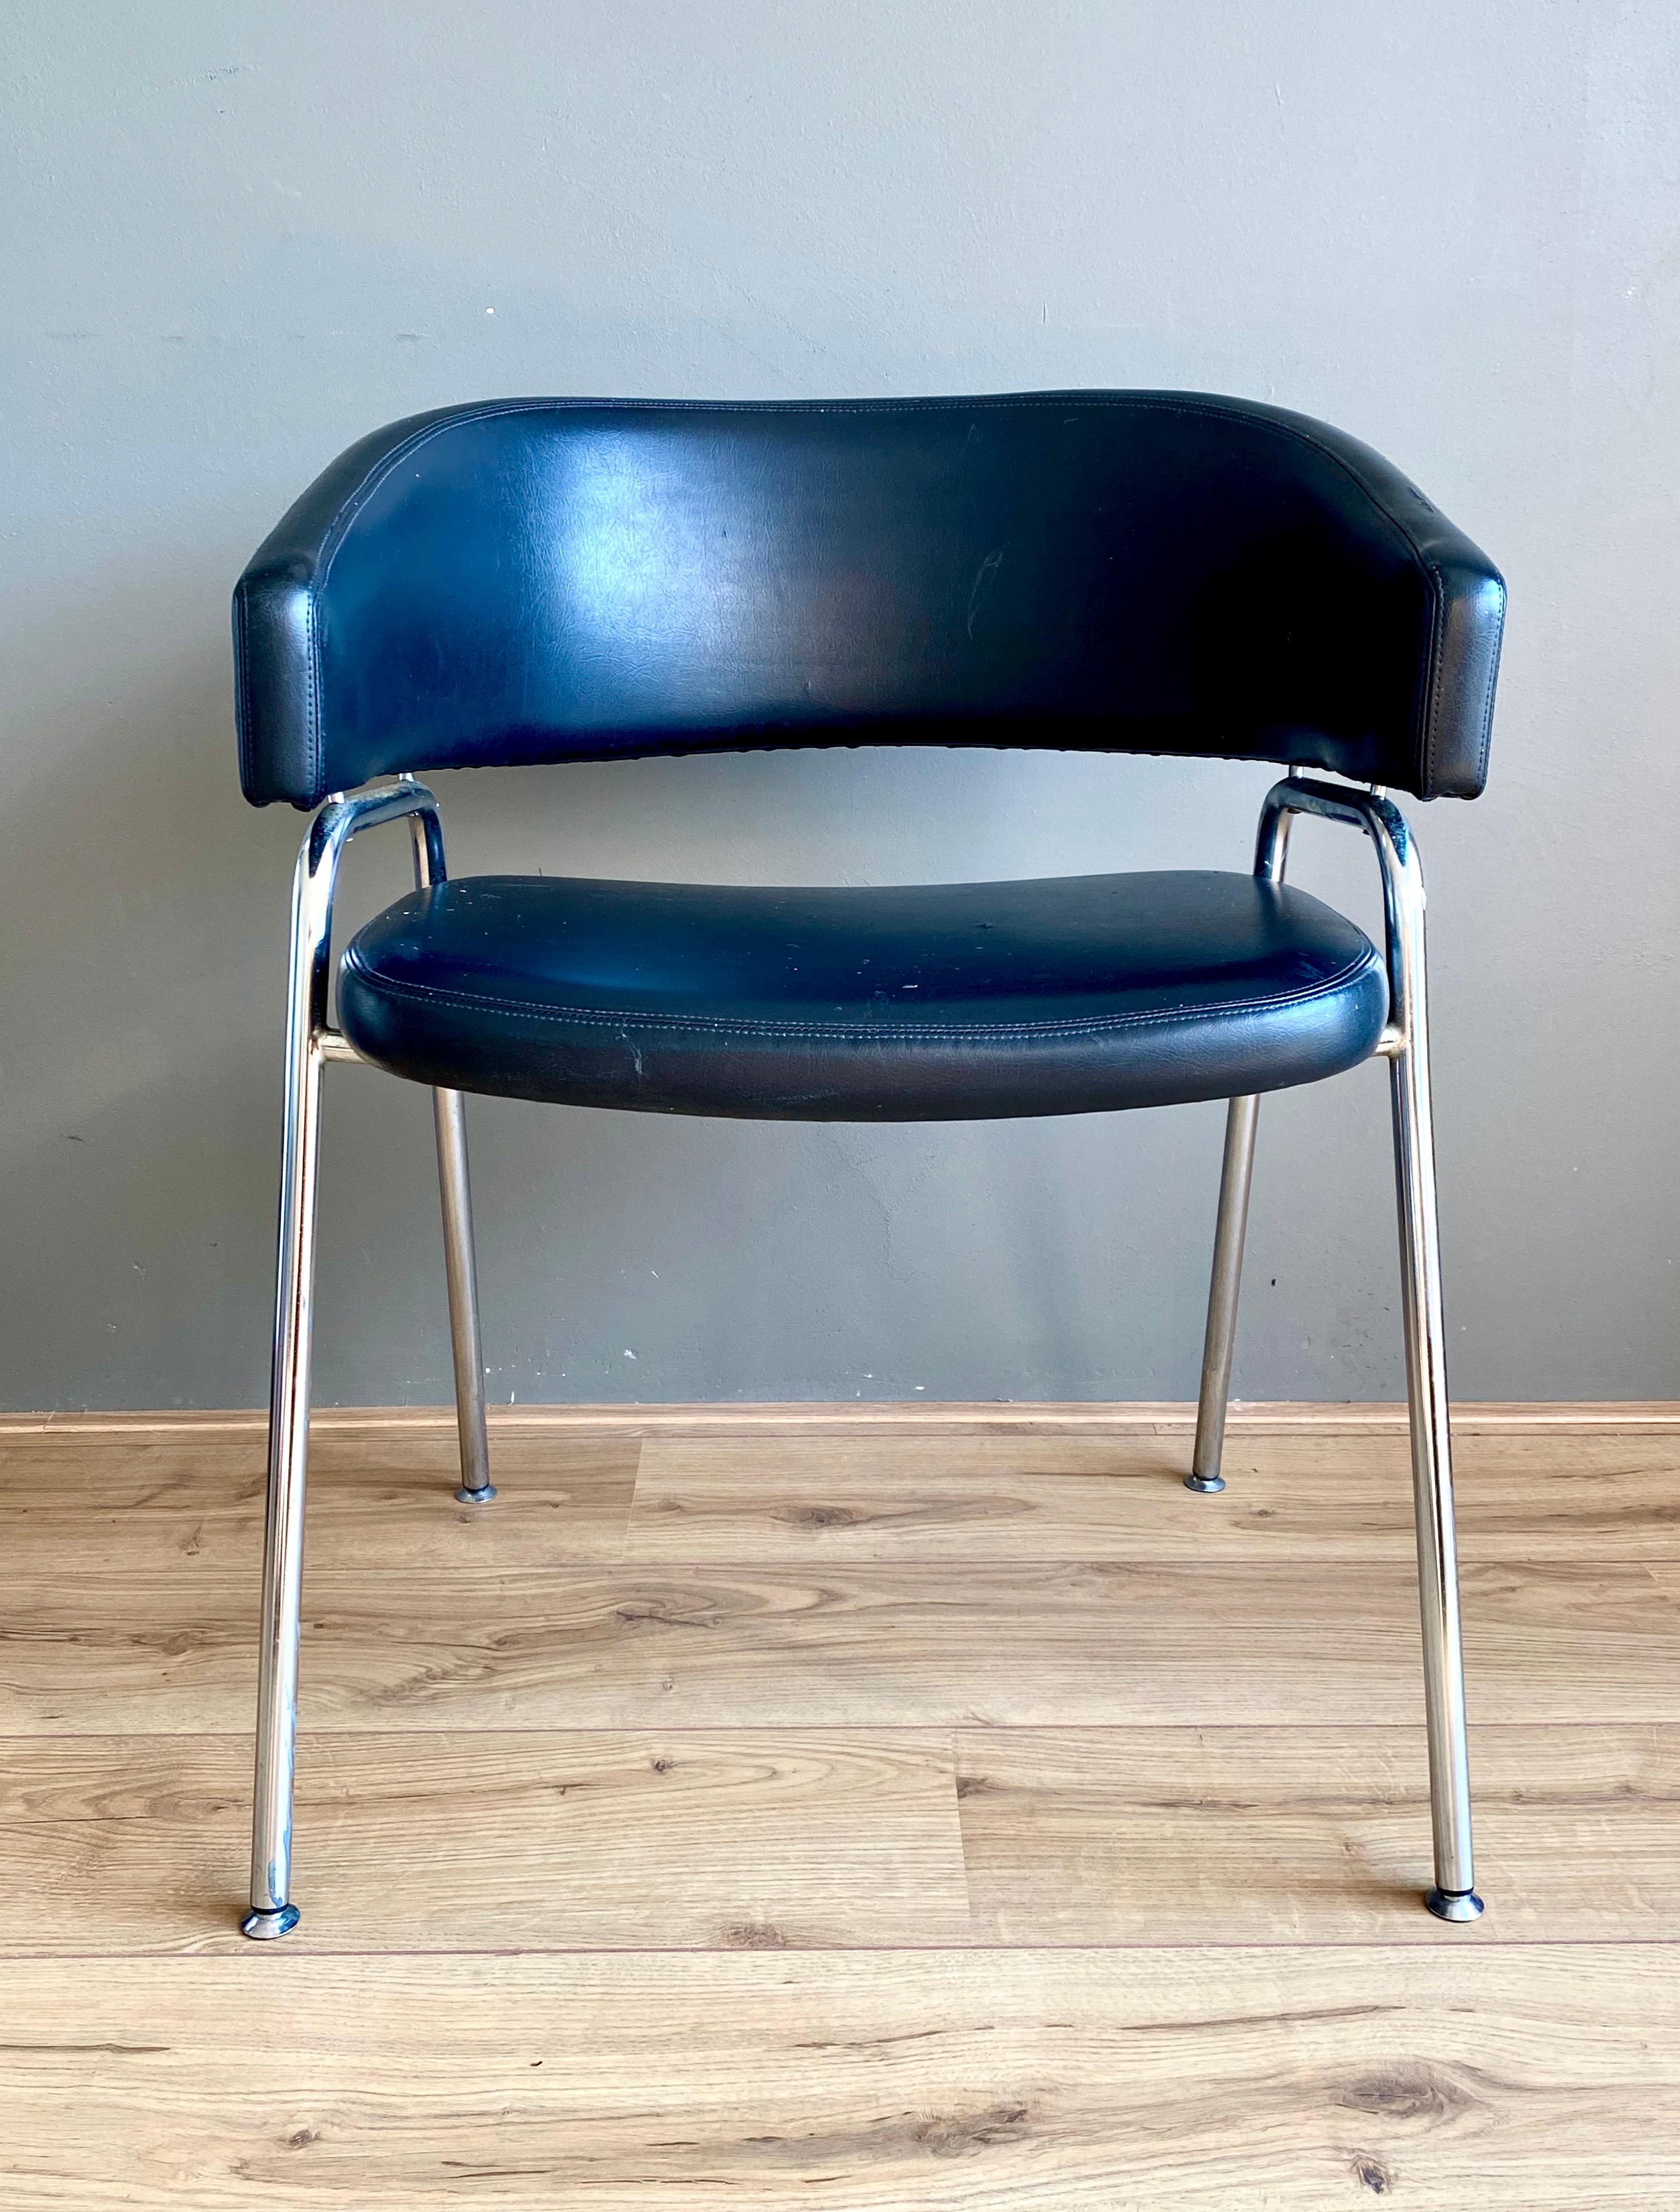 Rare fauteuil, modèle AP22, conçu par Hein Salomonson et Theo Tempelman en 1960. La chaise a été fabriquée par AP Originals, à l'origine pour le restaurant RAI d'Amsterdam. La chaise est dotée d'une base en métal chromé et d'un revêtement en